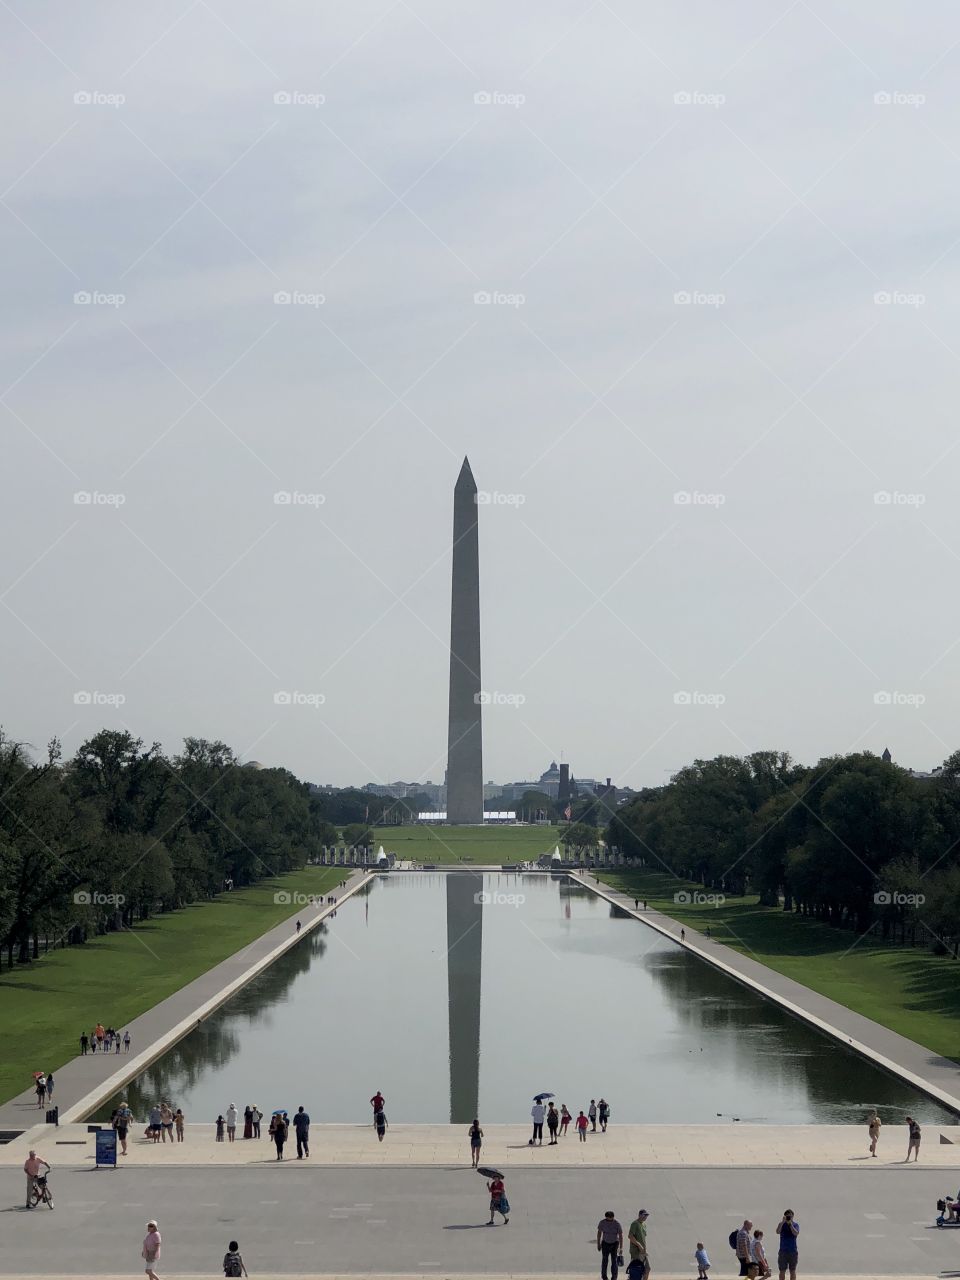 Monument of Washington 